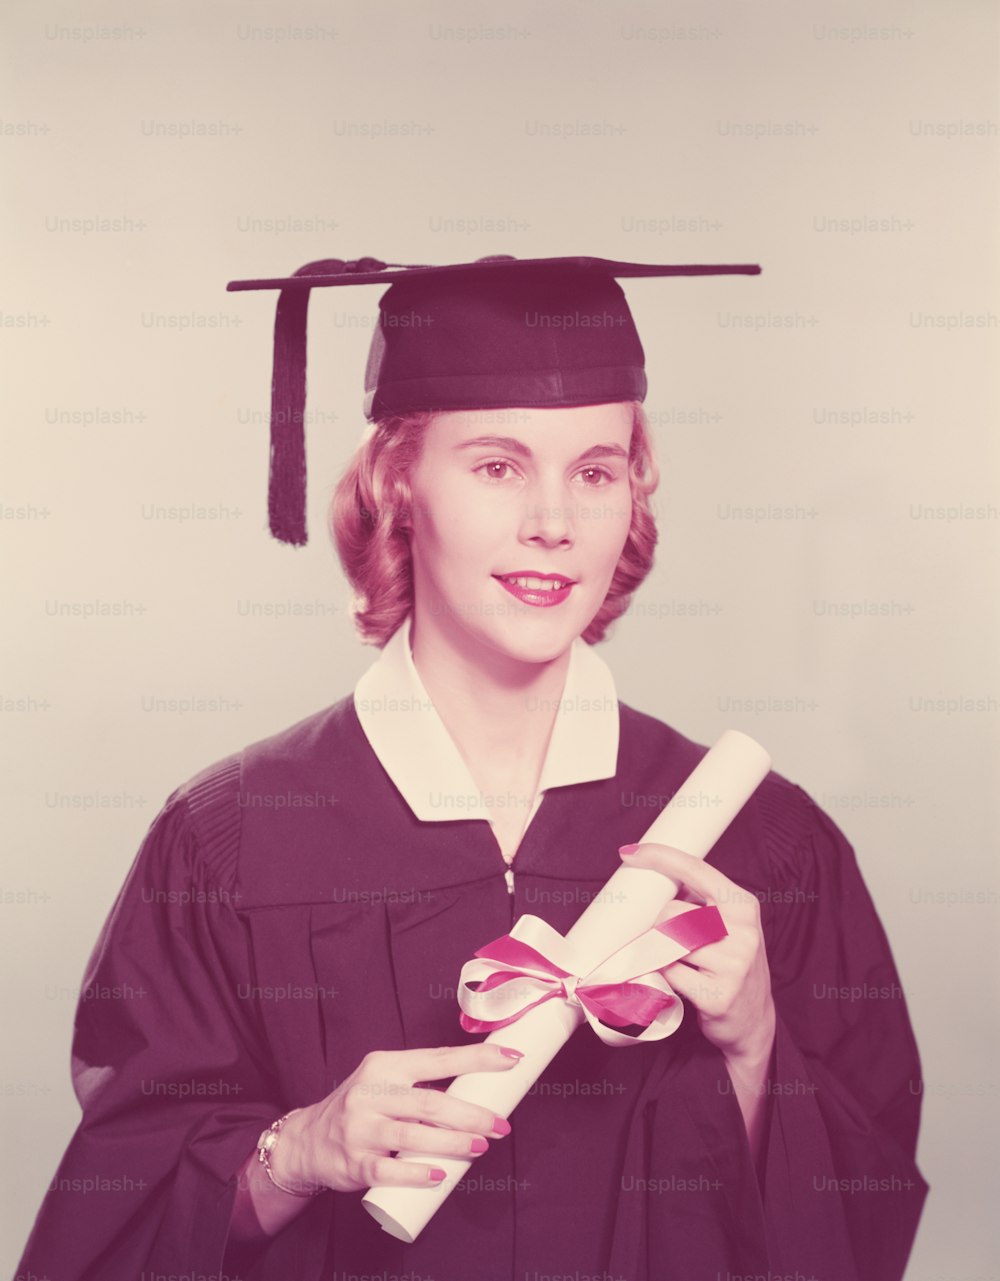 STATI UNITI - 1950 CIRCA: Giovane donna che indossa abiti di laurea e mortaio, tenendo il diploma legato con nastro rosso e bianco.